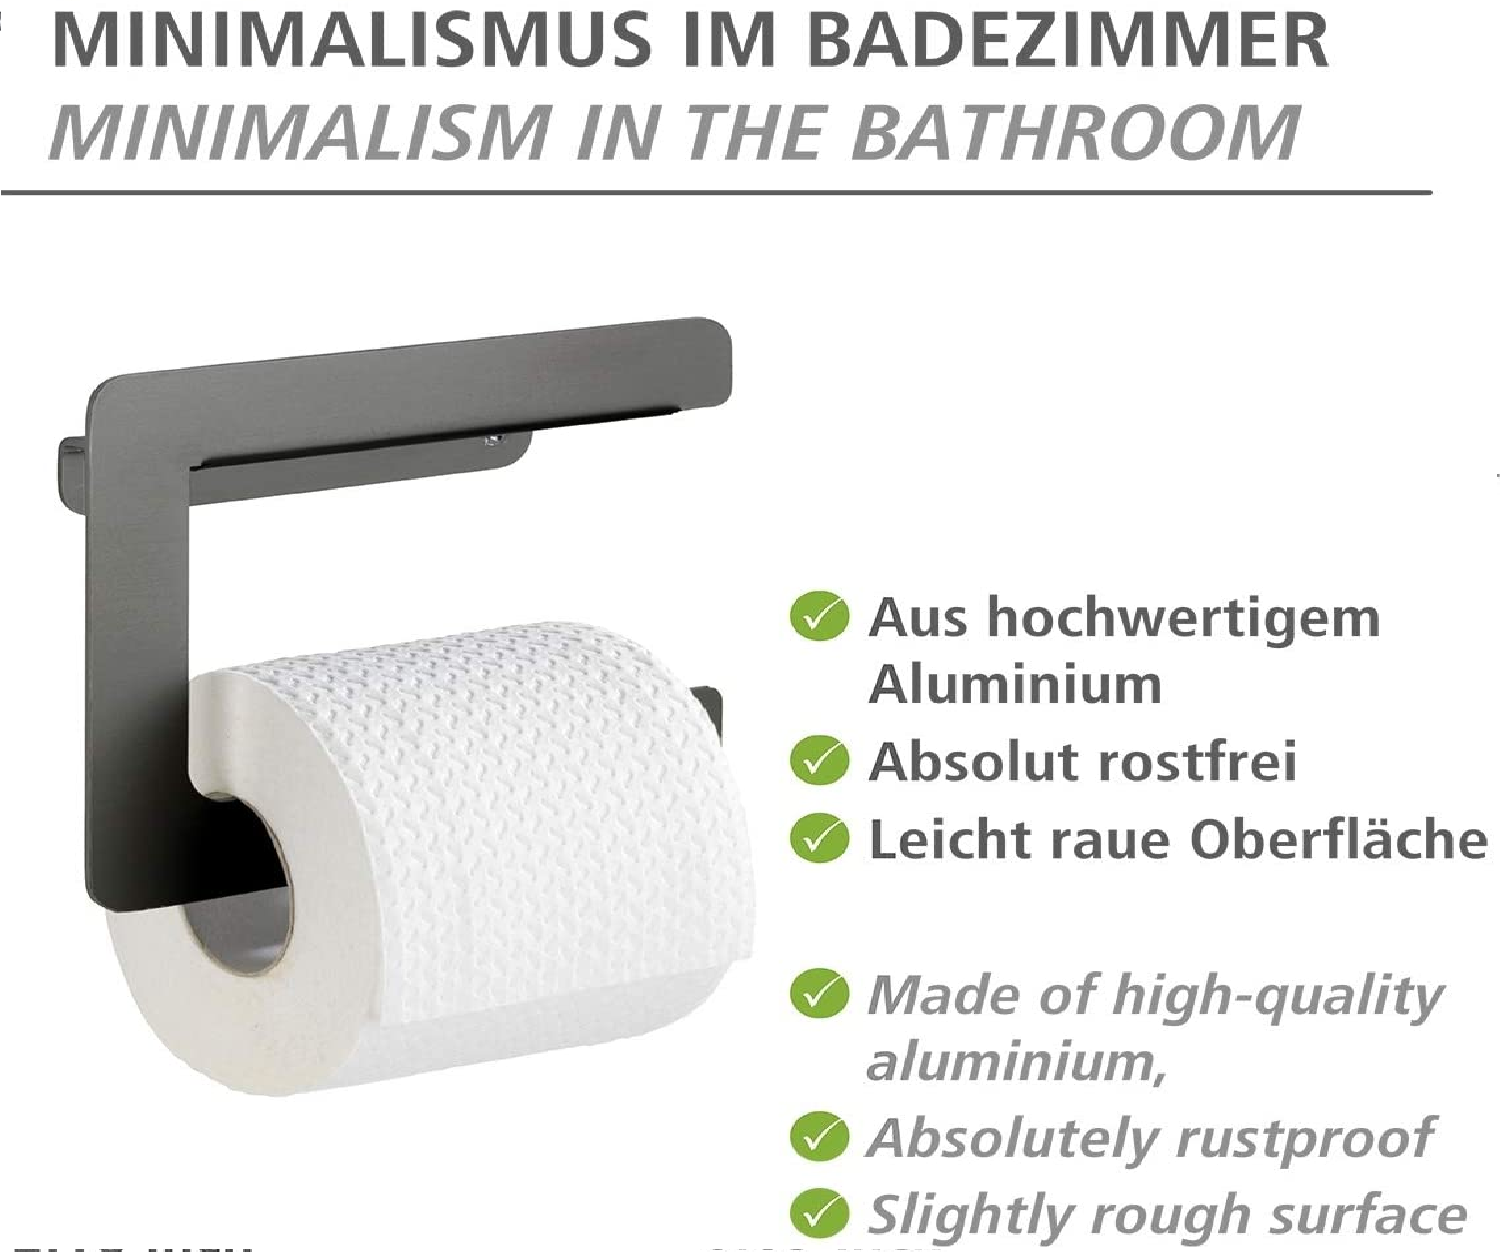 Toilettenpapierhalter Montella - Papierrollenhalter zum Schrauben, rostfrei, Aluminium, 17 x 14 x 5.5 cm, Anthrazit